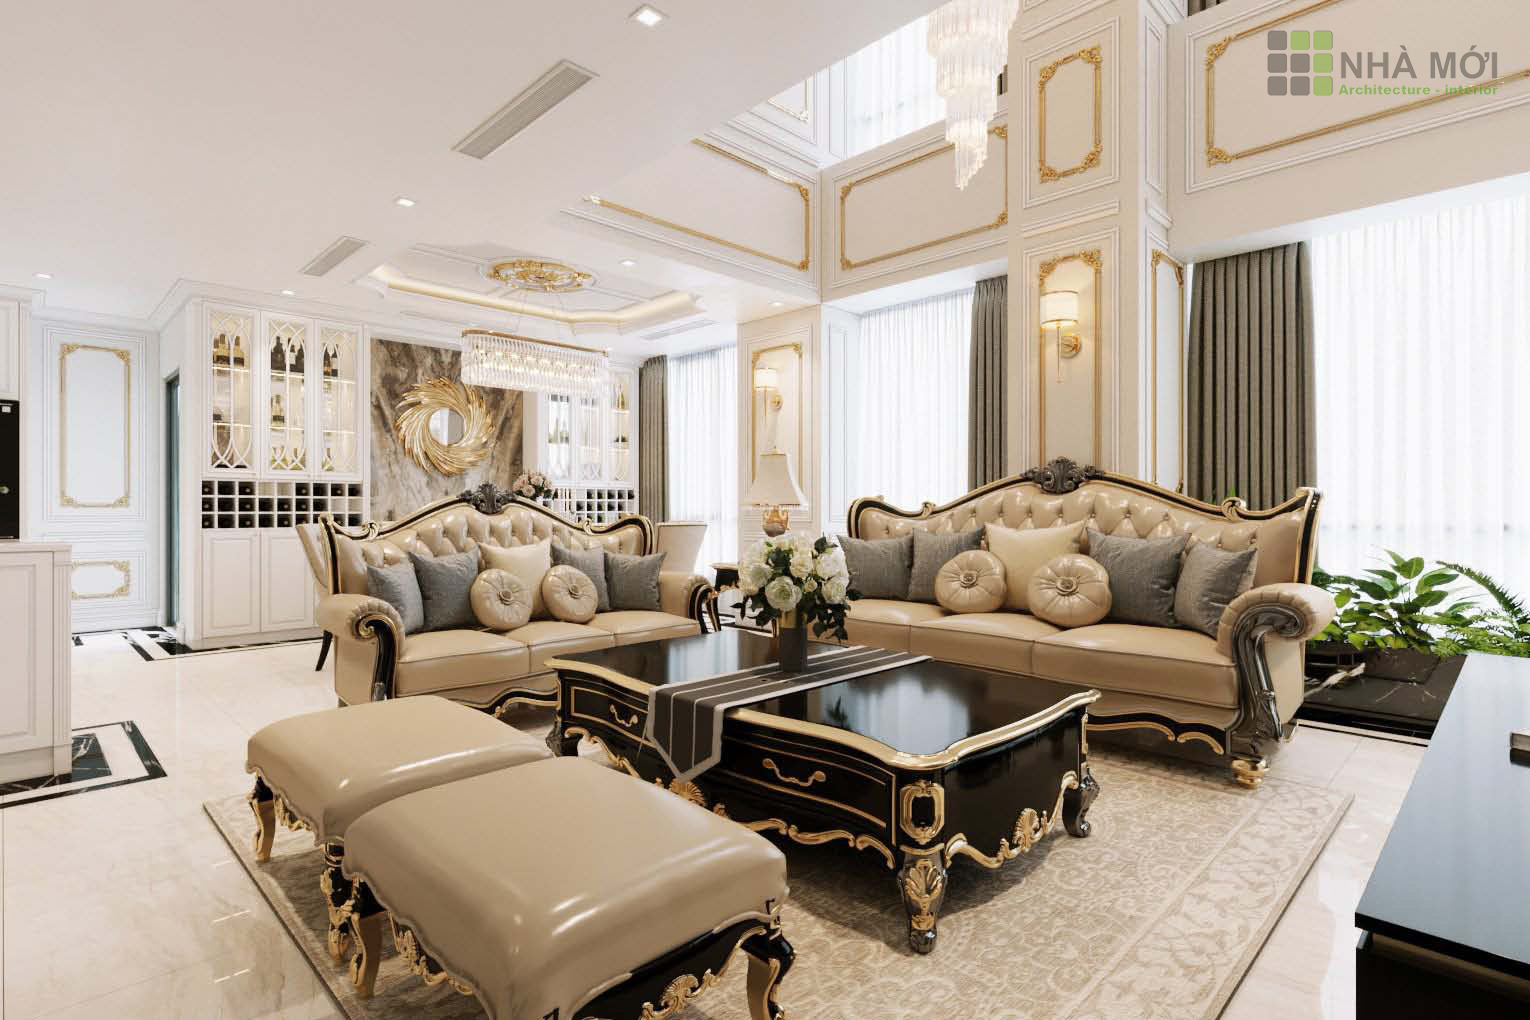 Phòng khách căn hộ với điểm nổi bật là bộ sofa cao cấp